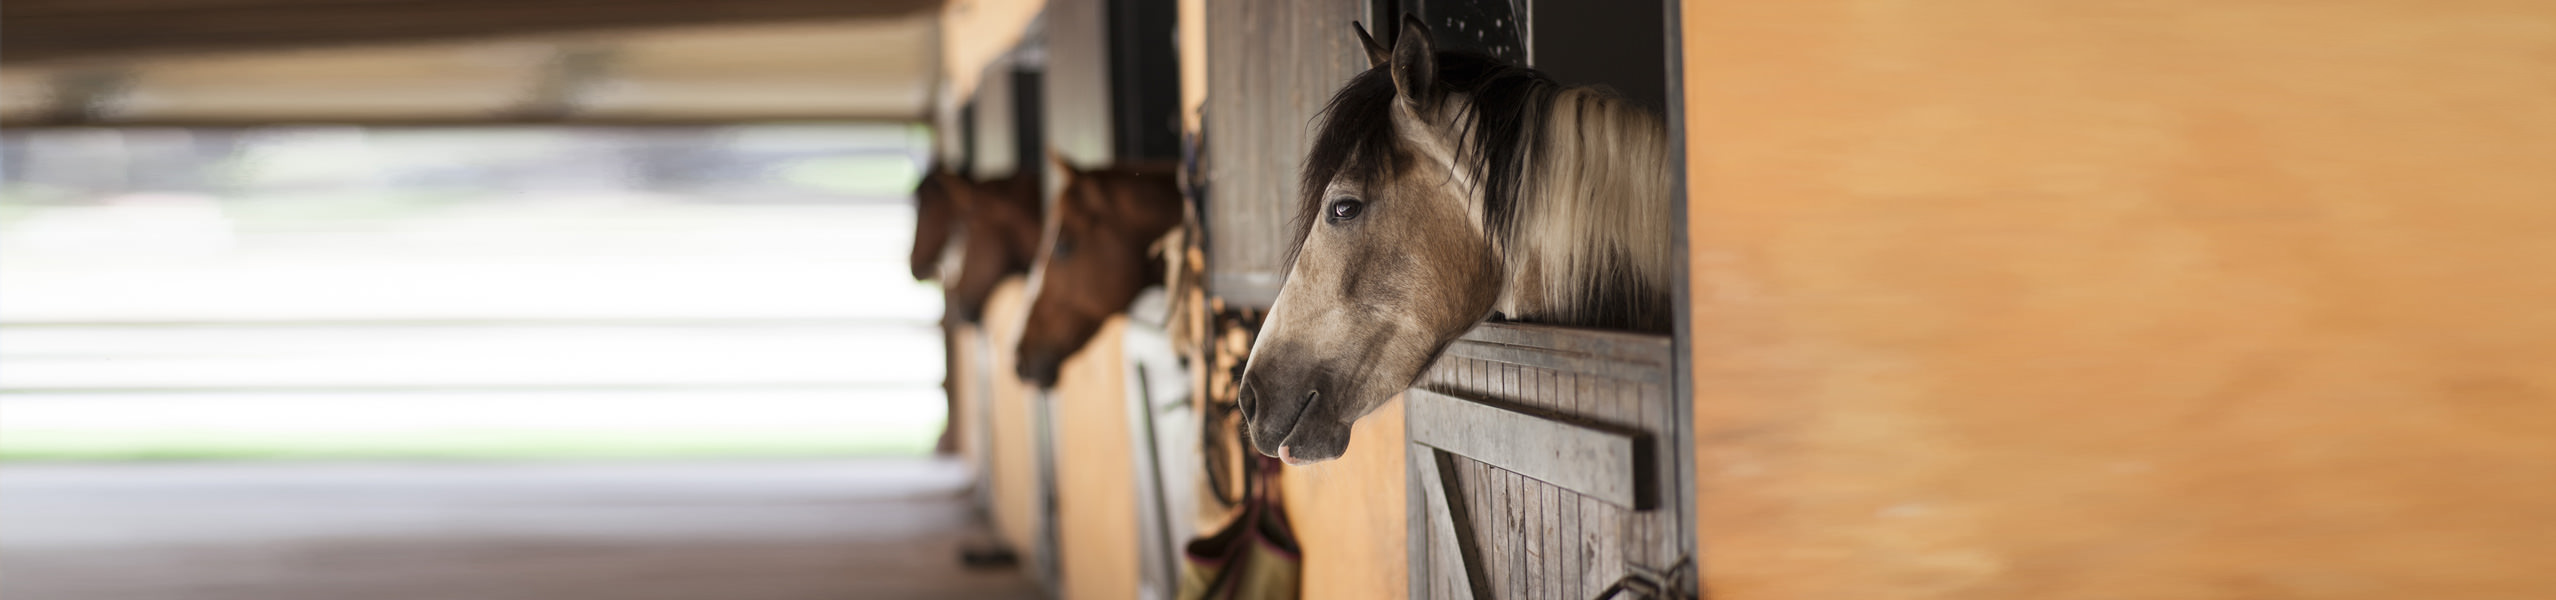 Homöopathie Pferd Sehnenschaden